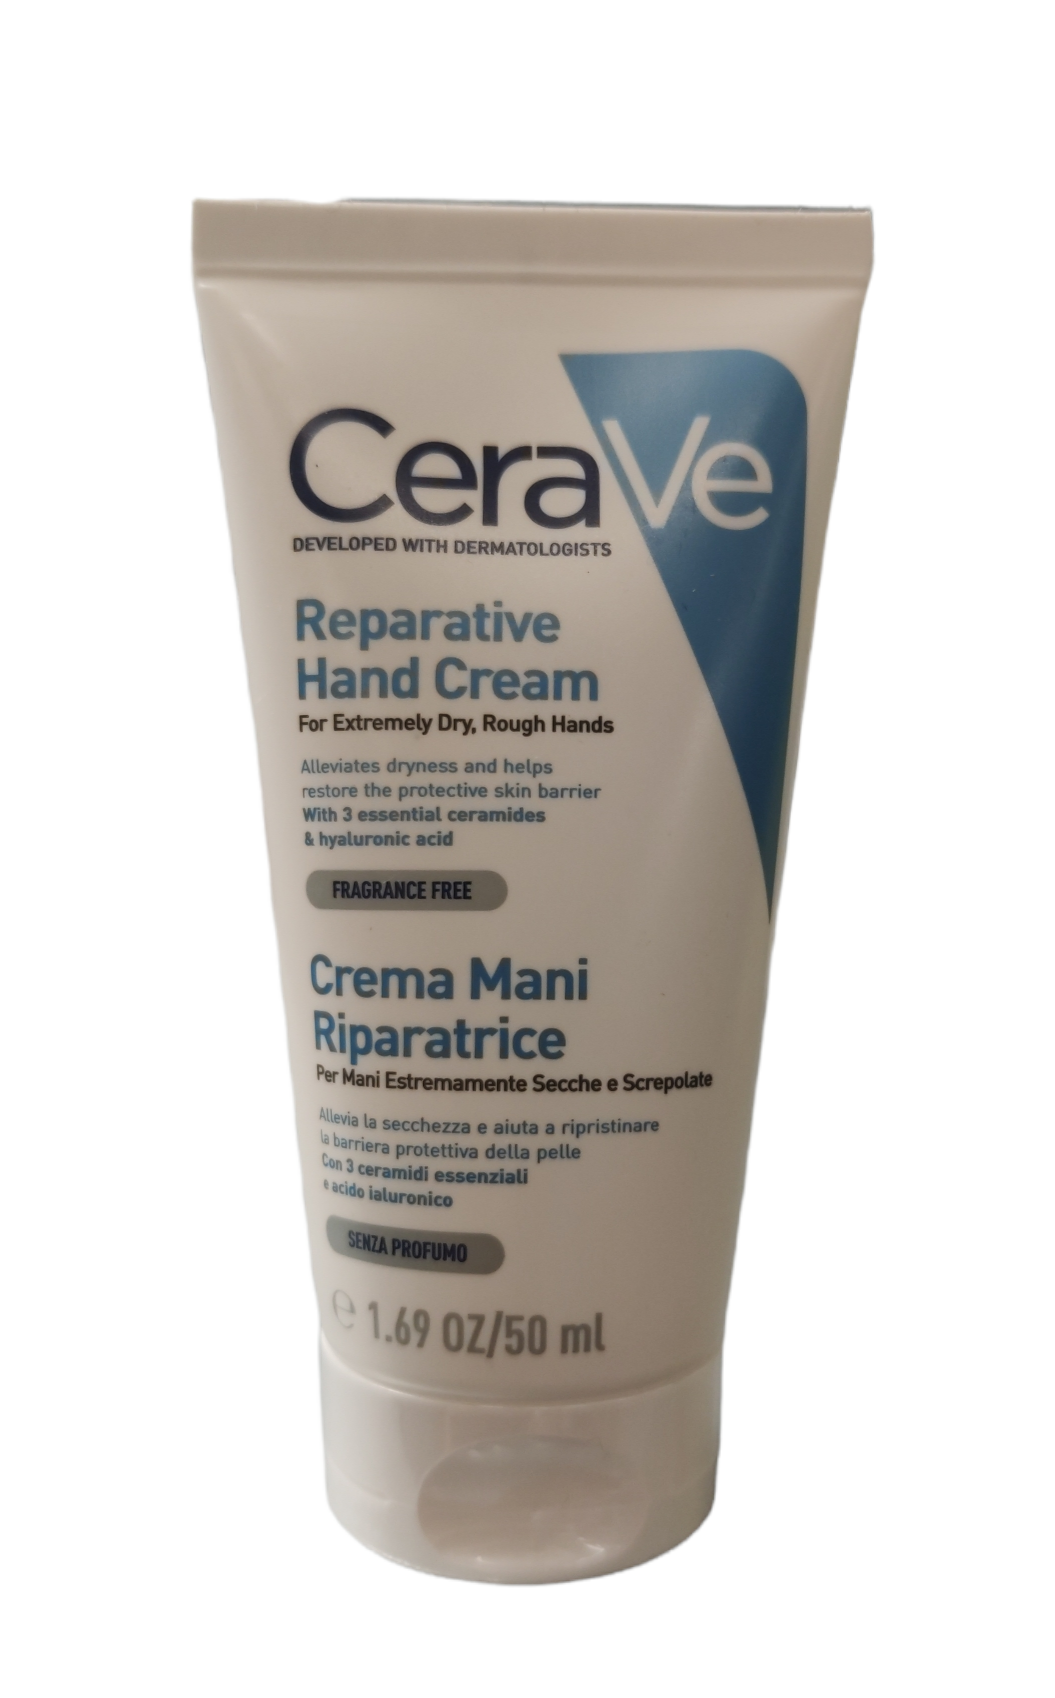 L'Oreal CeraVe Crema Mani Riparatrice 50 ml - Per mani estremamente secche e screpolate